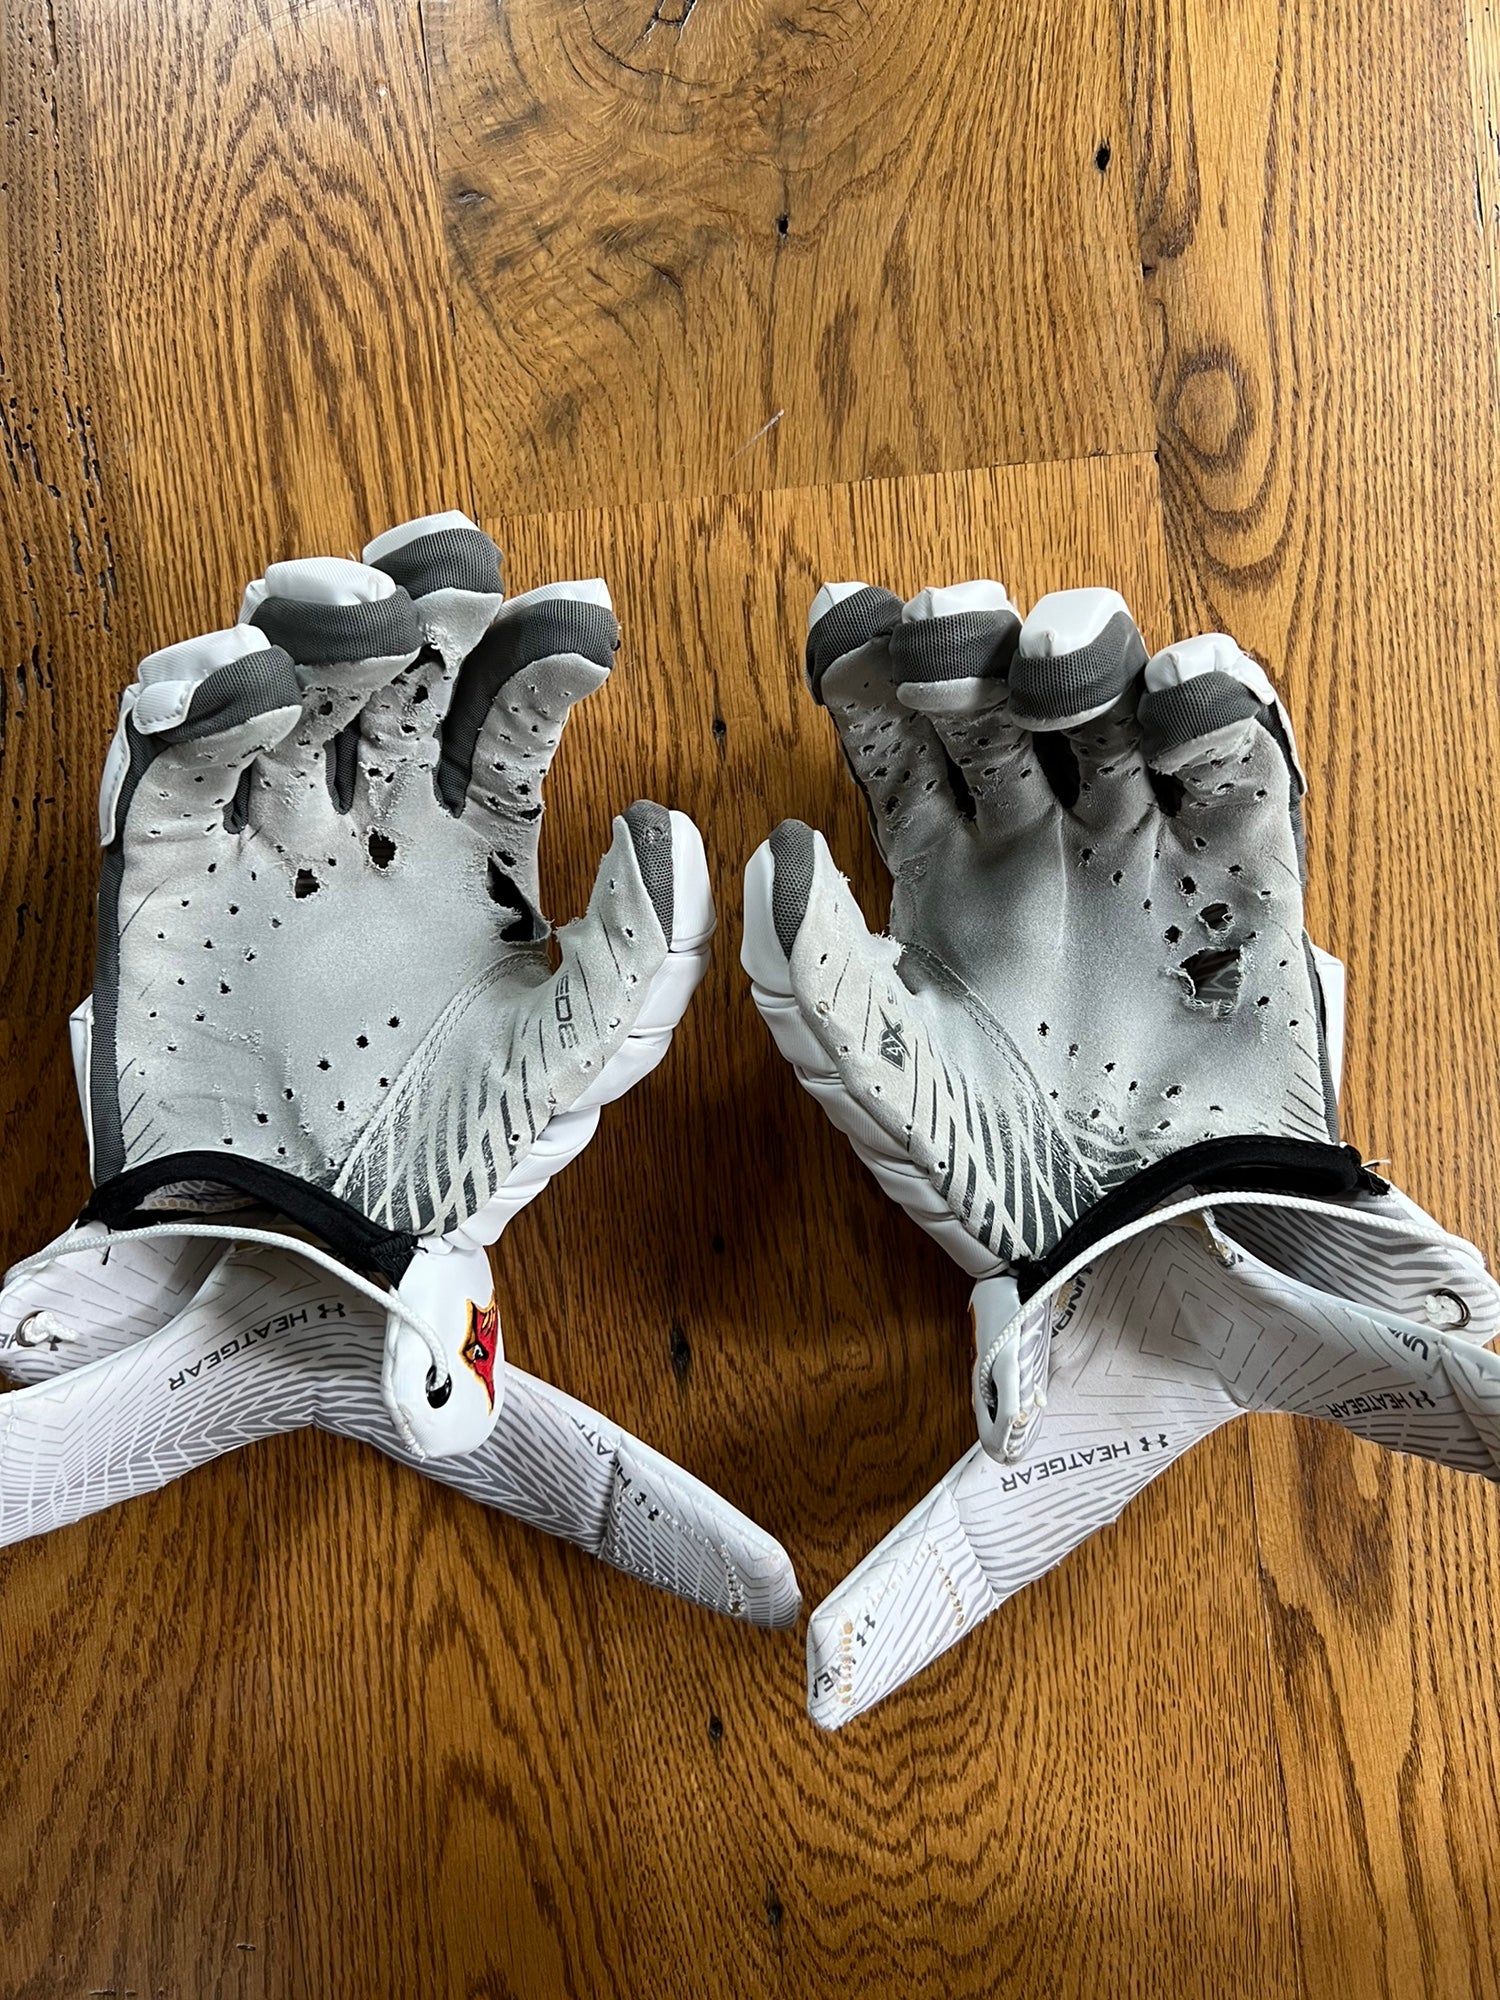 Joker Nike Football Gloves 